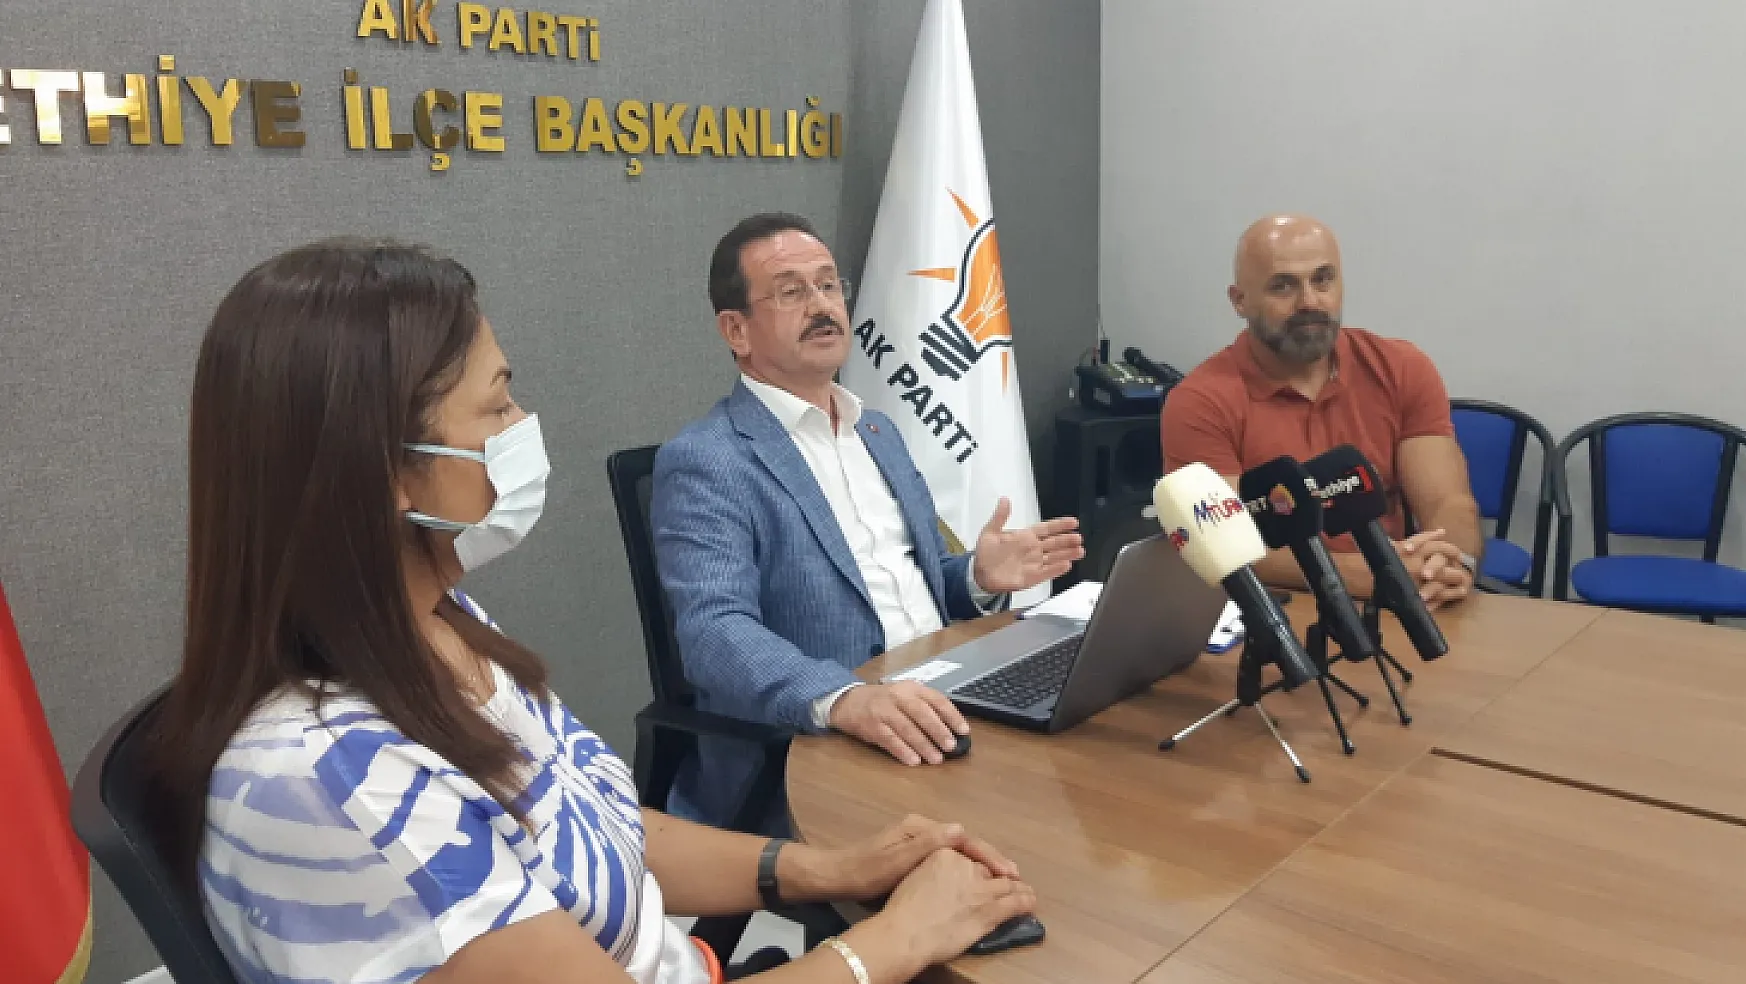 AK Parti Fethiye İlçe Başkanlığından basın açıklaması